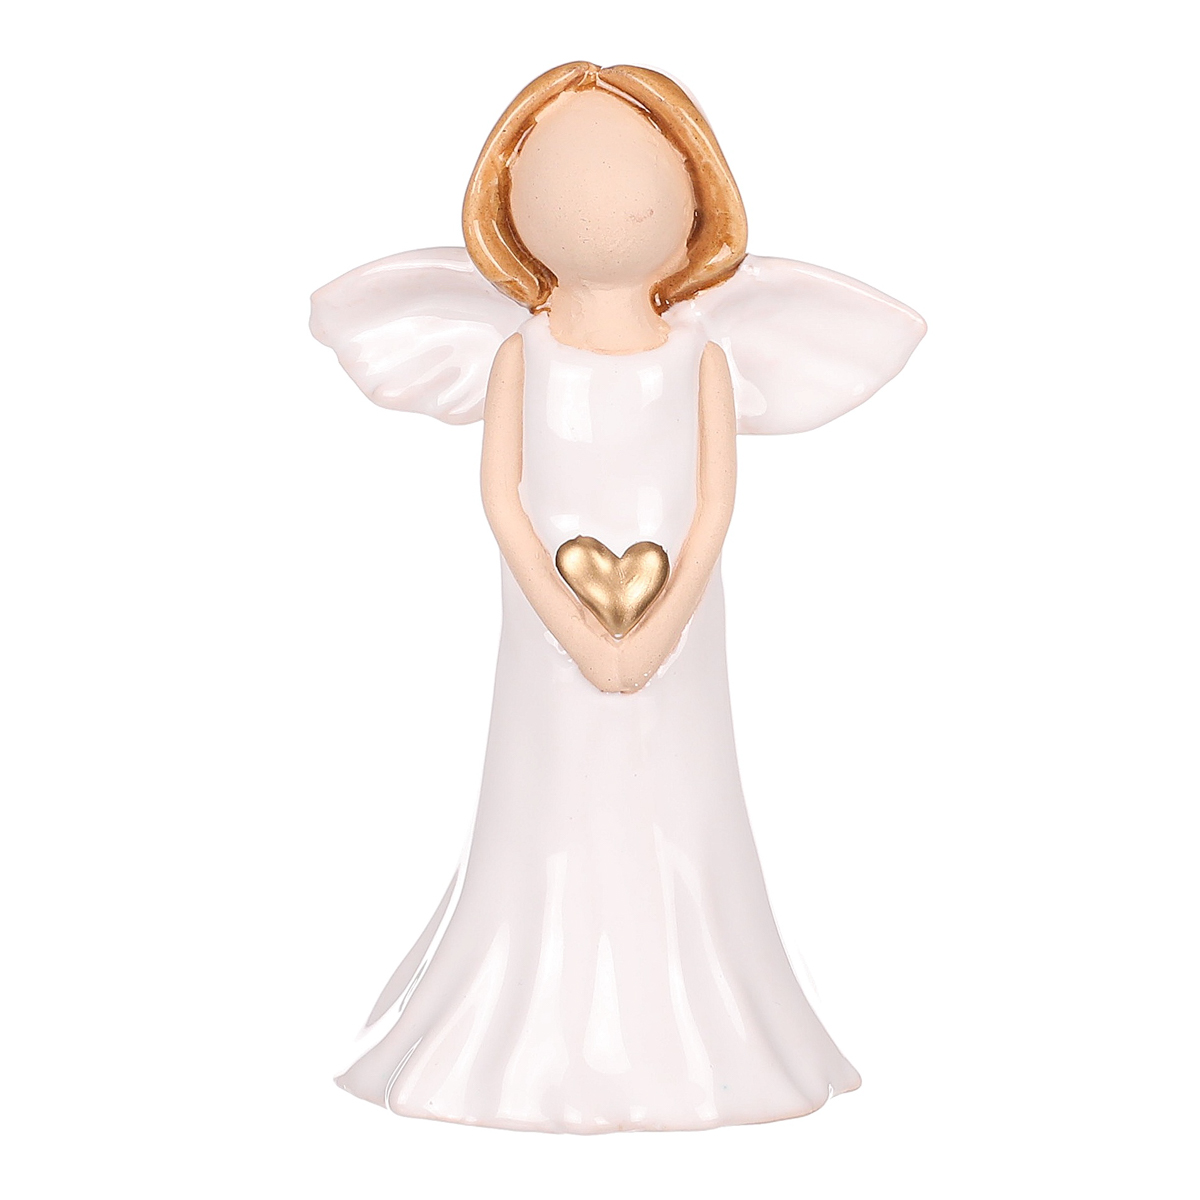 Anděl držící srdce s bílými křídly, keramika